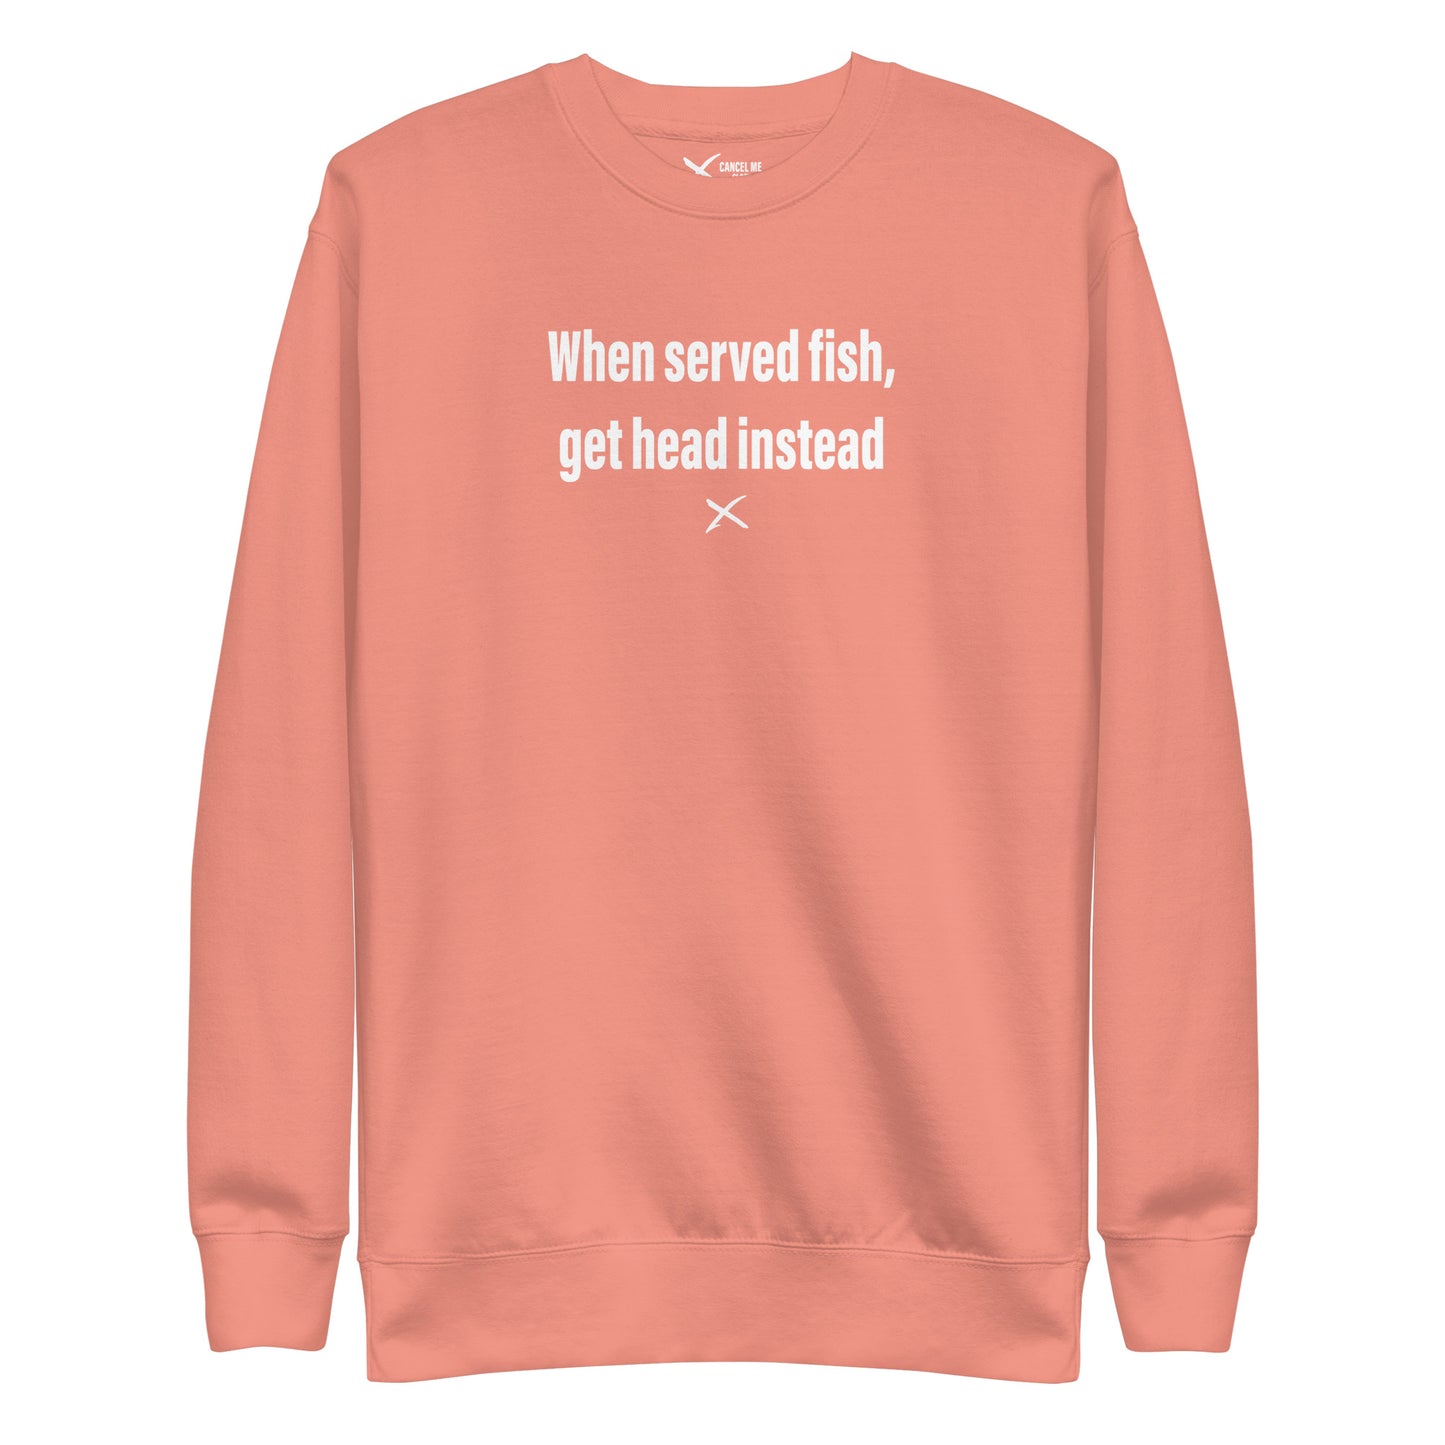 When served fish, get head instead - Sweatshirt